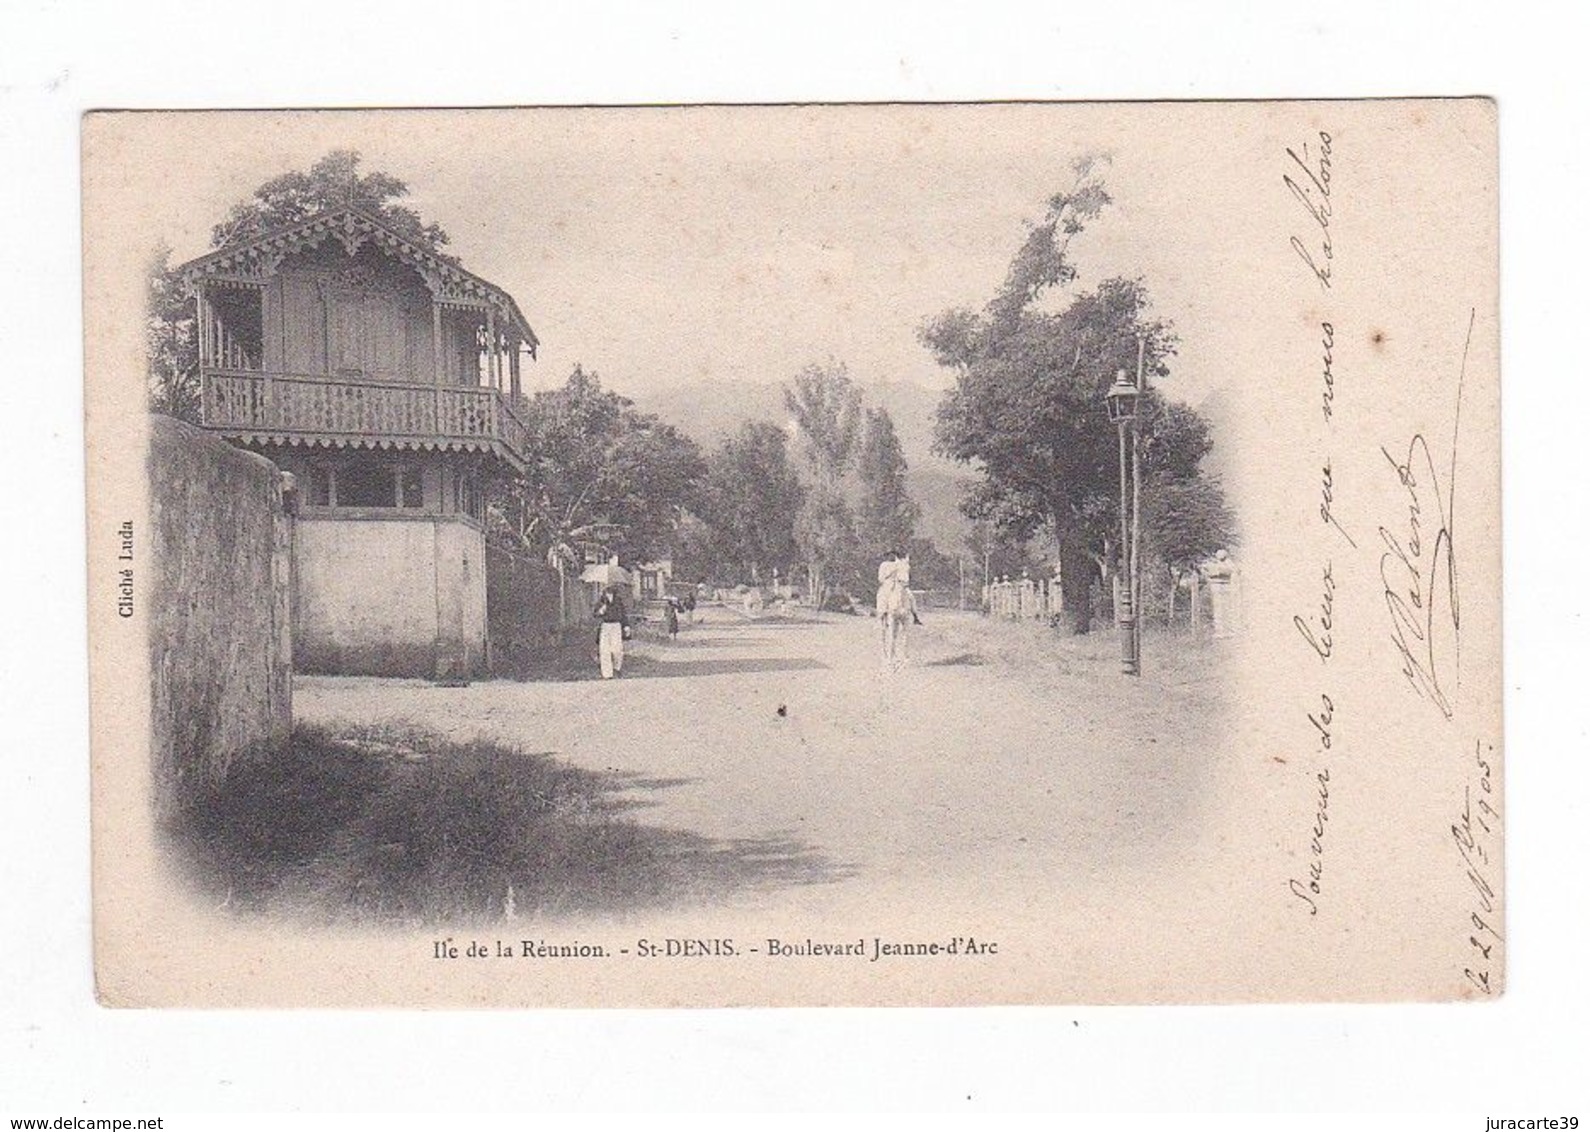 Ile De La Réunion.Saint-Denis.St-Denis.Boulevard Jeanne D'Arc.(Maison De Mme Palant.Voir Le Texte Du Verso).1905 - Saint Denis